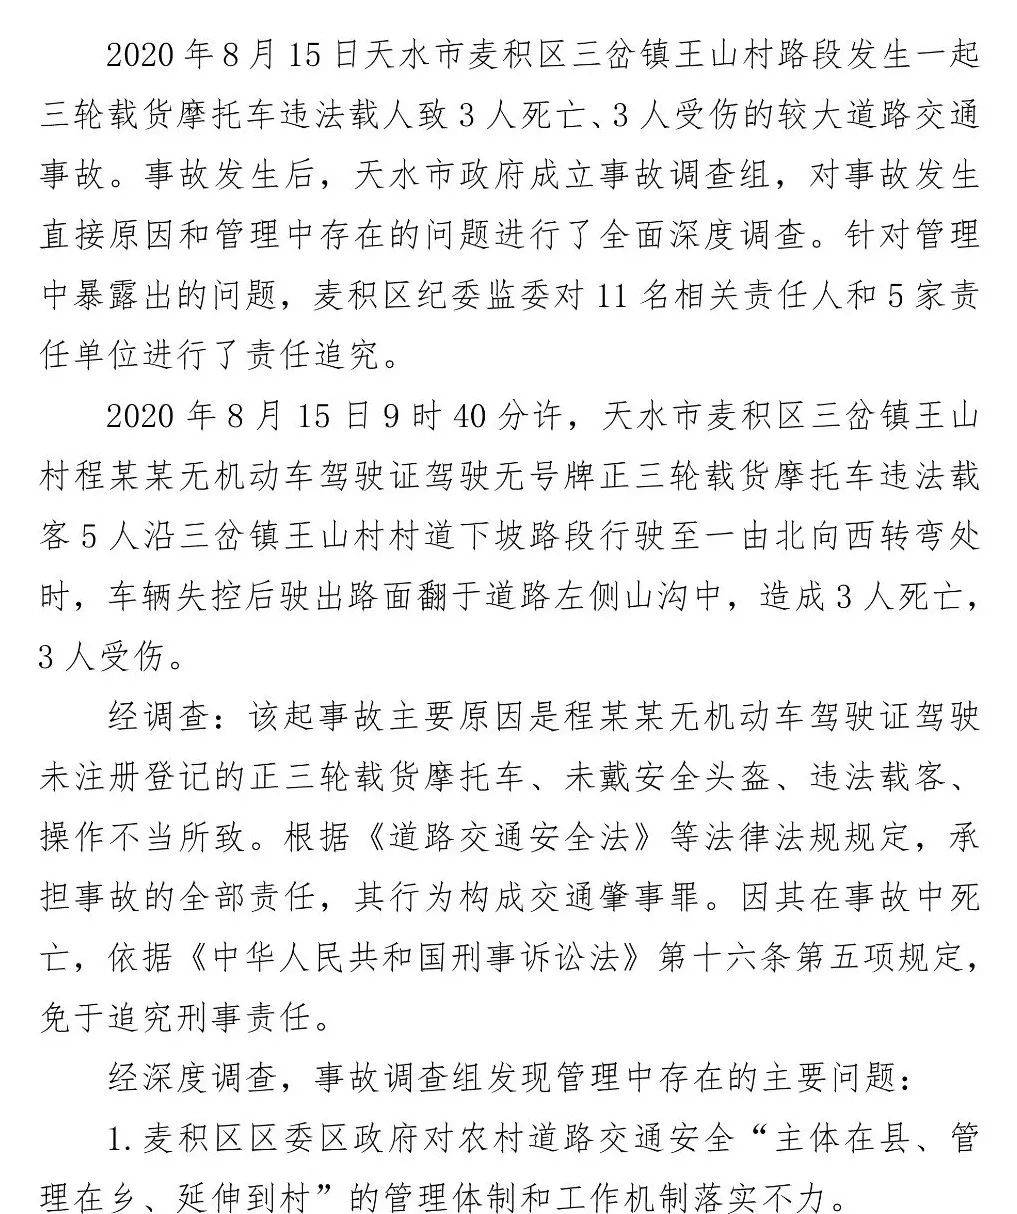 上海调查公司取证_上海证据调查公司_上海证据调查公司电话